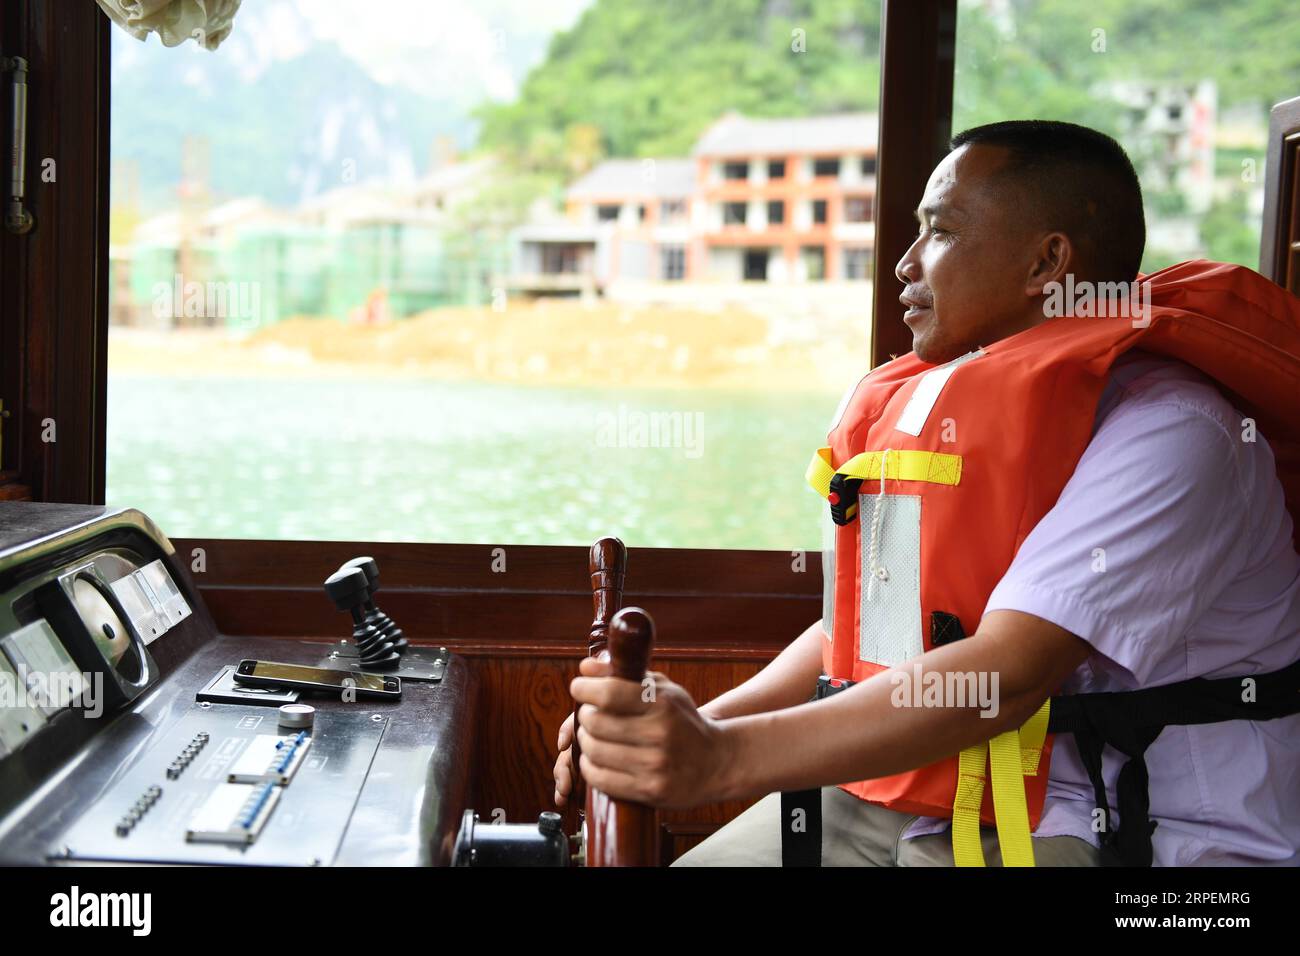 (190901) -- LINGYUN, 1 septembre 2019 -- Lao Ketuan conduit son bateau touristique au point pittoresque du lac Haokun dans le comté de Lingyun, dans la région autonome de Guangxi Zhuang, dans le sud de la Chine, 30 août 2019. Lao Ketuan, 40 ans, vit dans le village montagneux de Haokun, un endroit où les transports sont extrêmement médiocres et où les ressources foncières sont rares, ce qui a sérieusement entravé le développement local et a plongé les gens dans la pauvreté. La famille AJO fait partie des ménages pauvres qui vivent ici. En 2016, Lao n’avait cependant jamais rêvé que sa famille puisse sortir de la pauvreté grâce au travail des autorités locales sur la pauvreté allev Banque D'Images